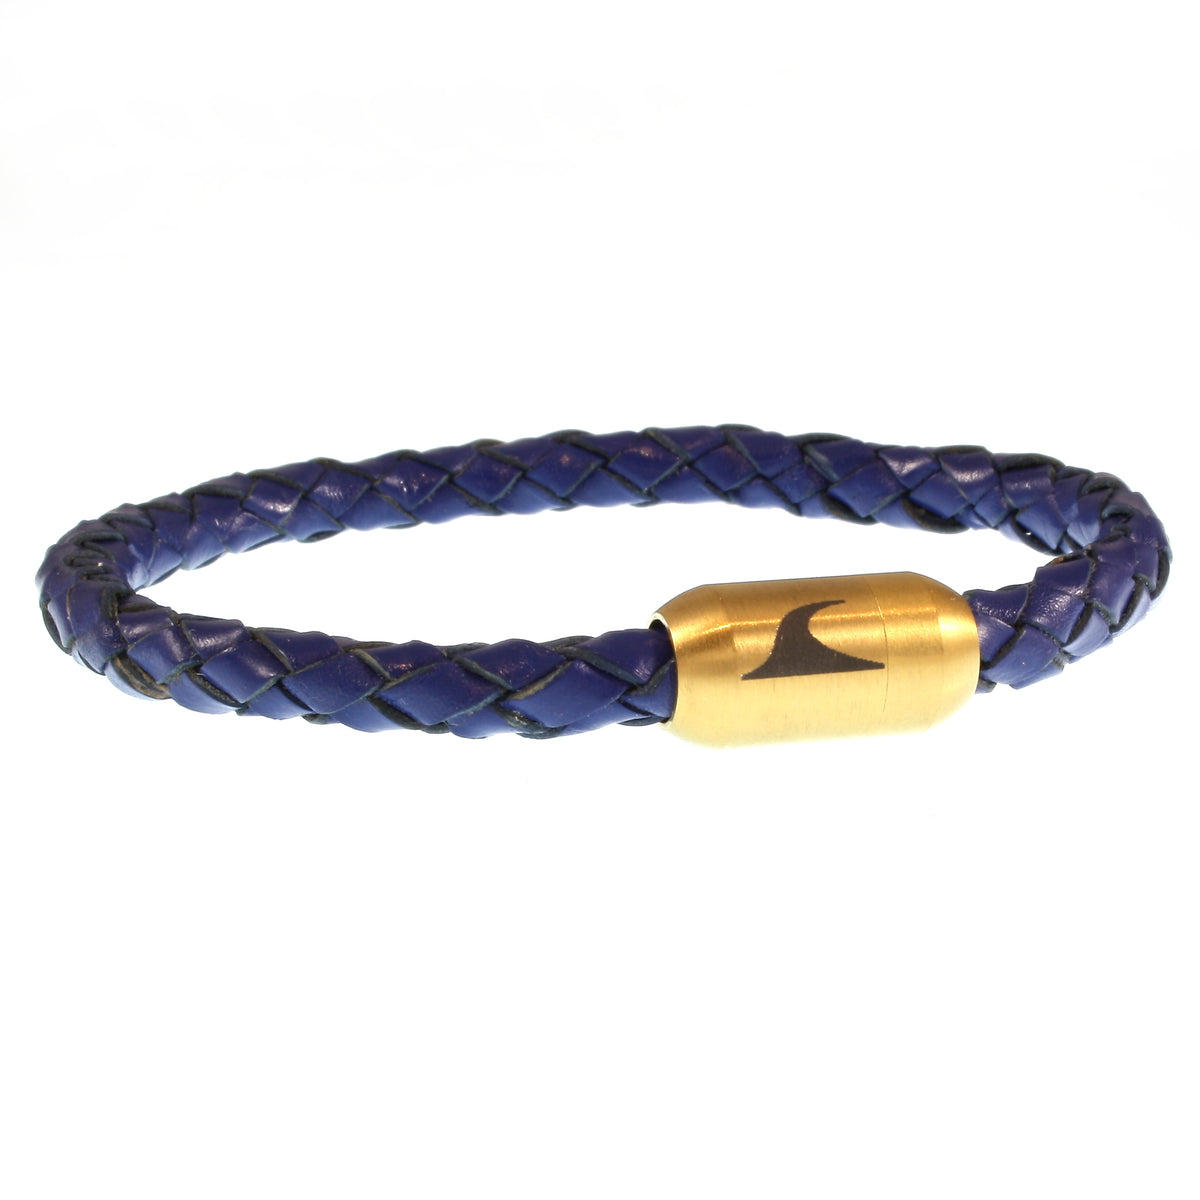 Herren-leder-armband-damen-sylt-blau-gold-geflochten-Edelstahlverschluss-vorn-wavepirate-shop-f